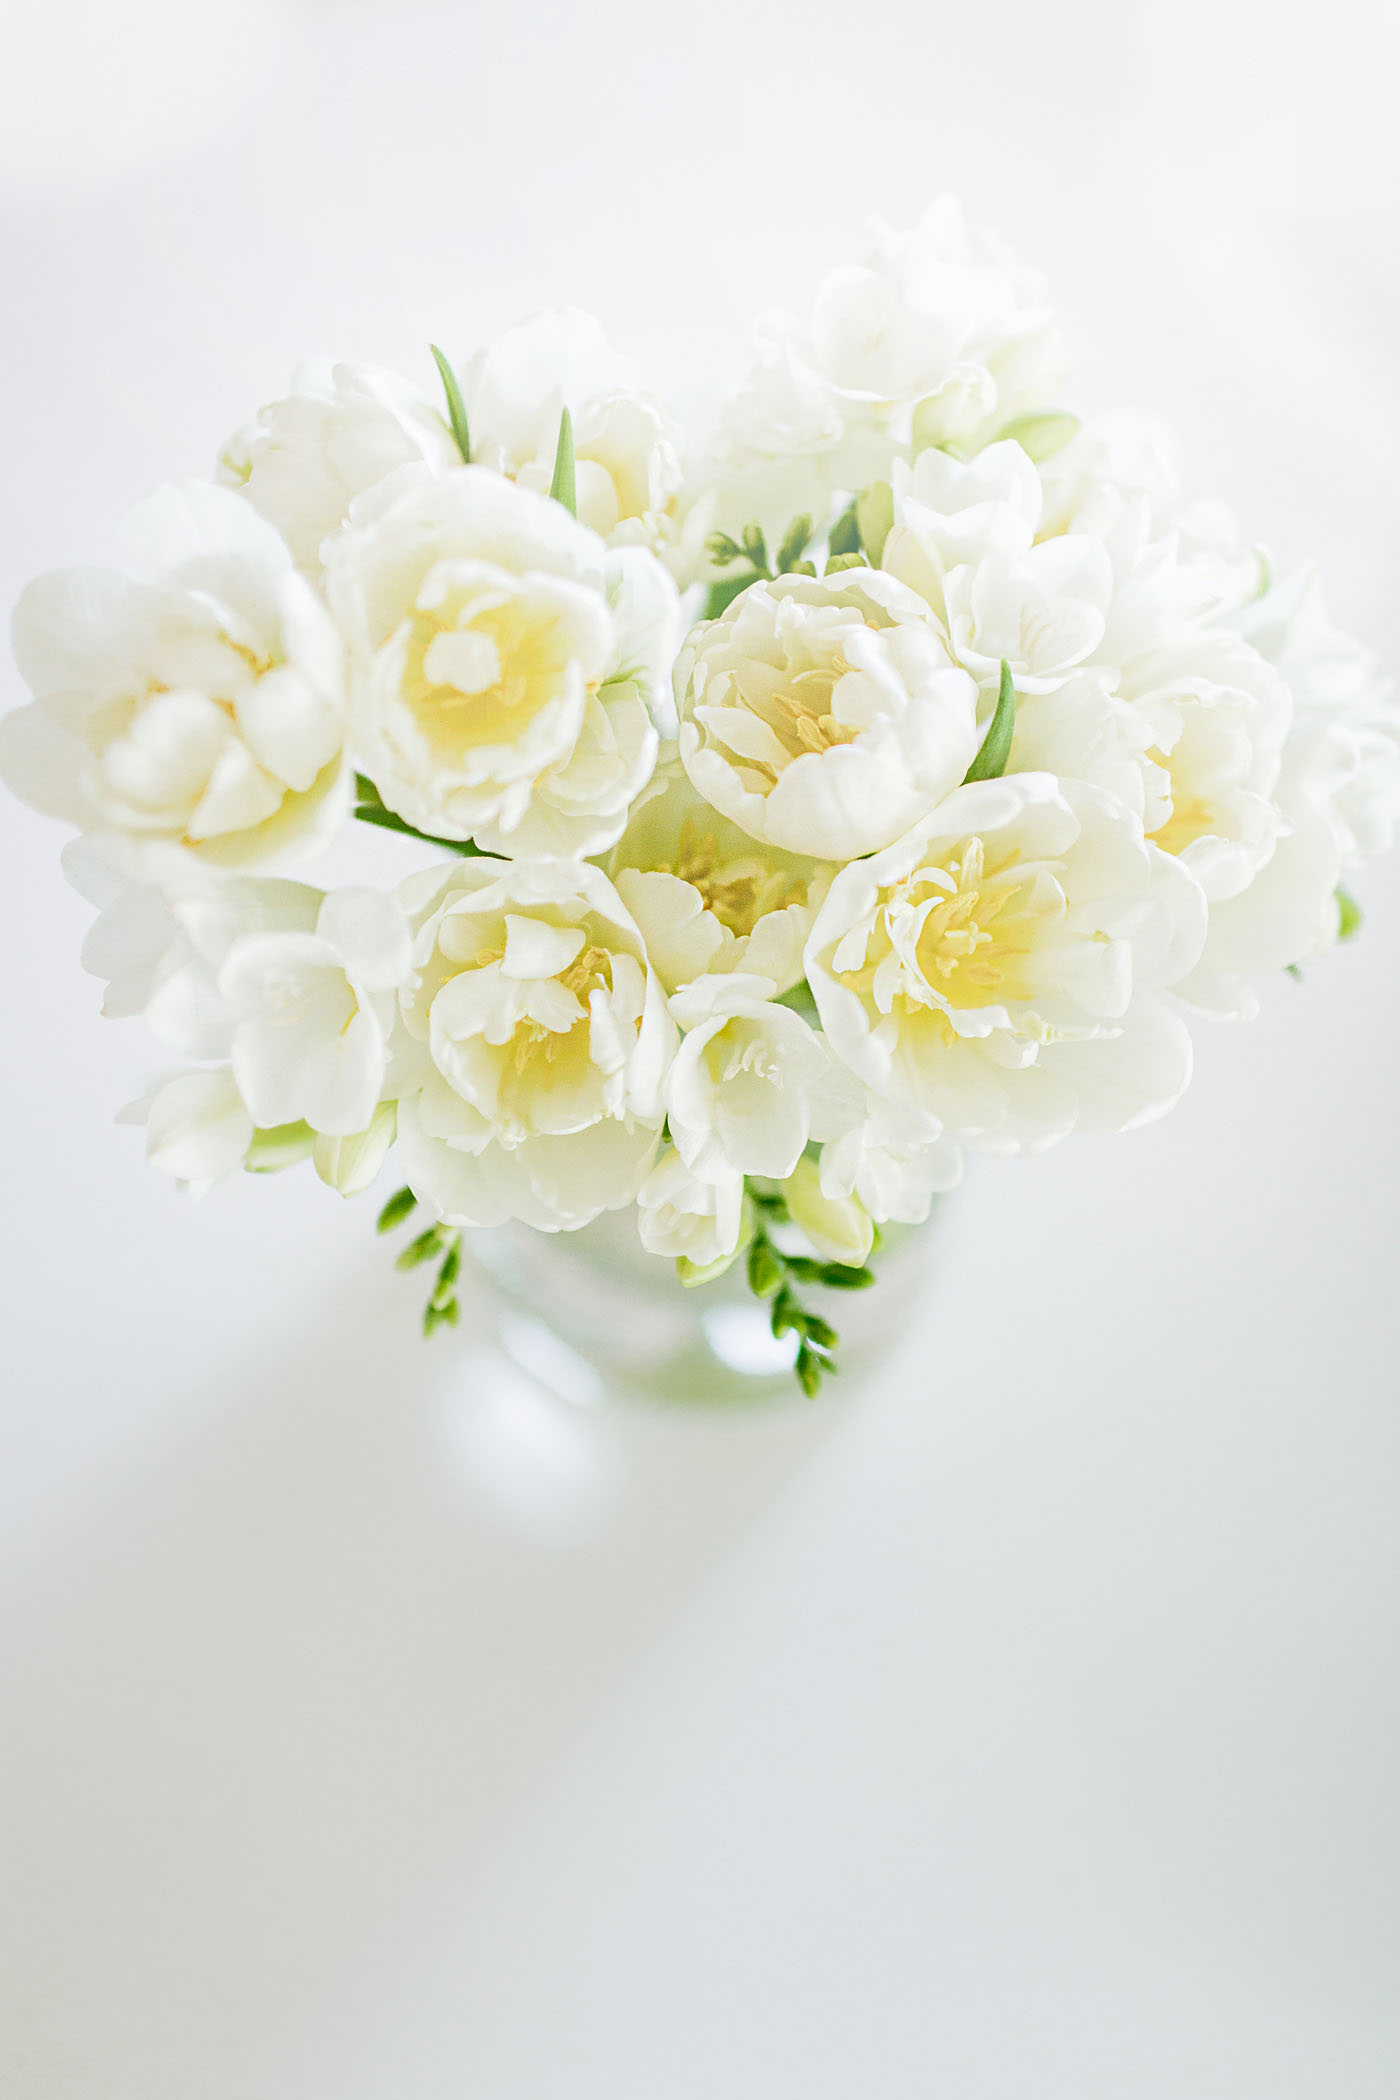 White Freesia in a vase